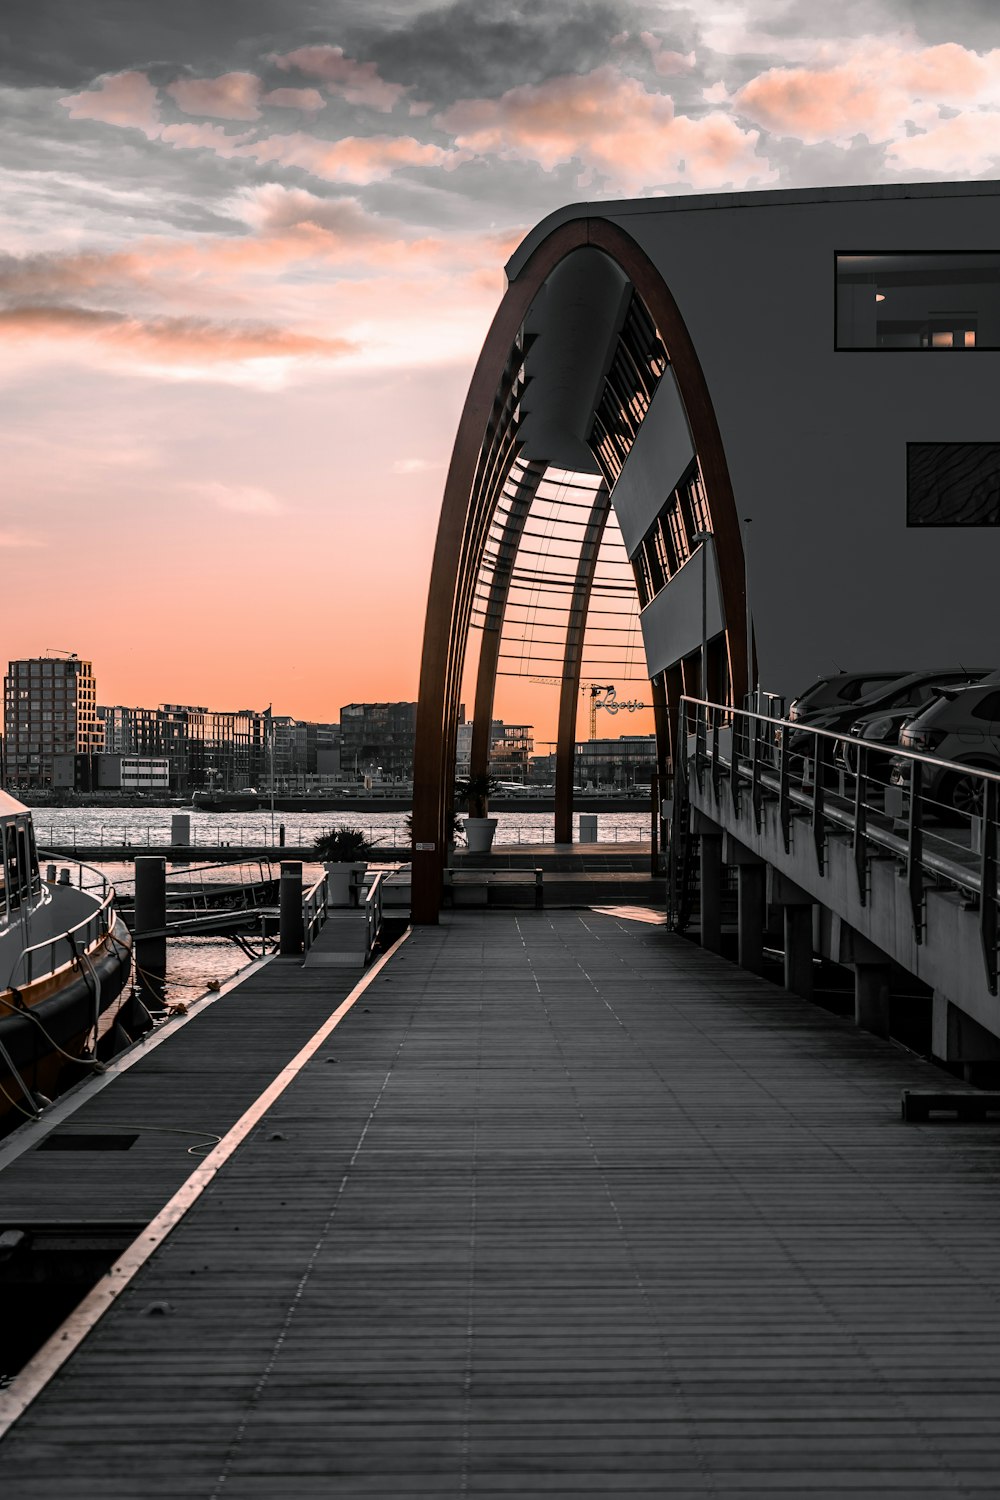 Barco blanco y negro en el muelle durante la puesta de sol